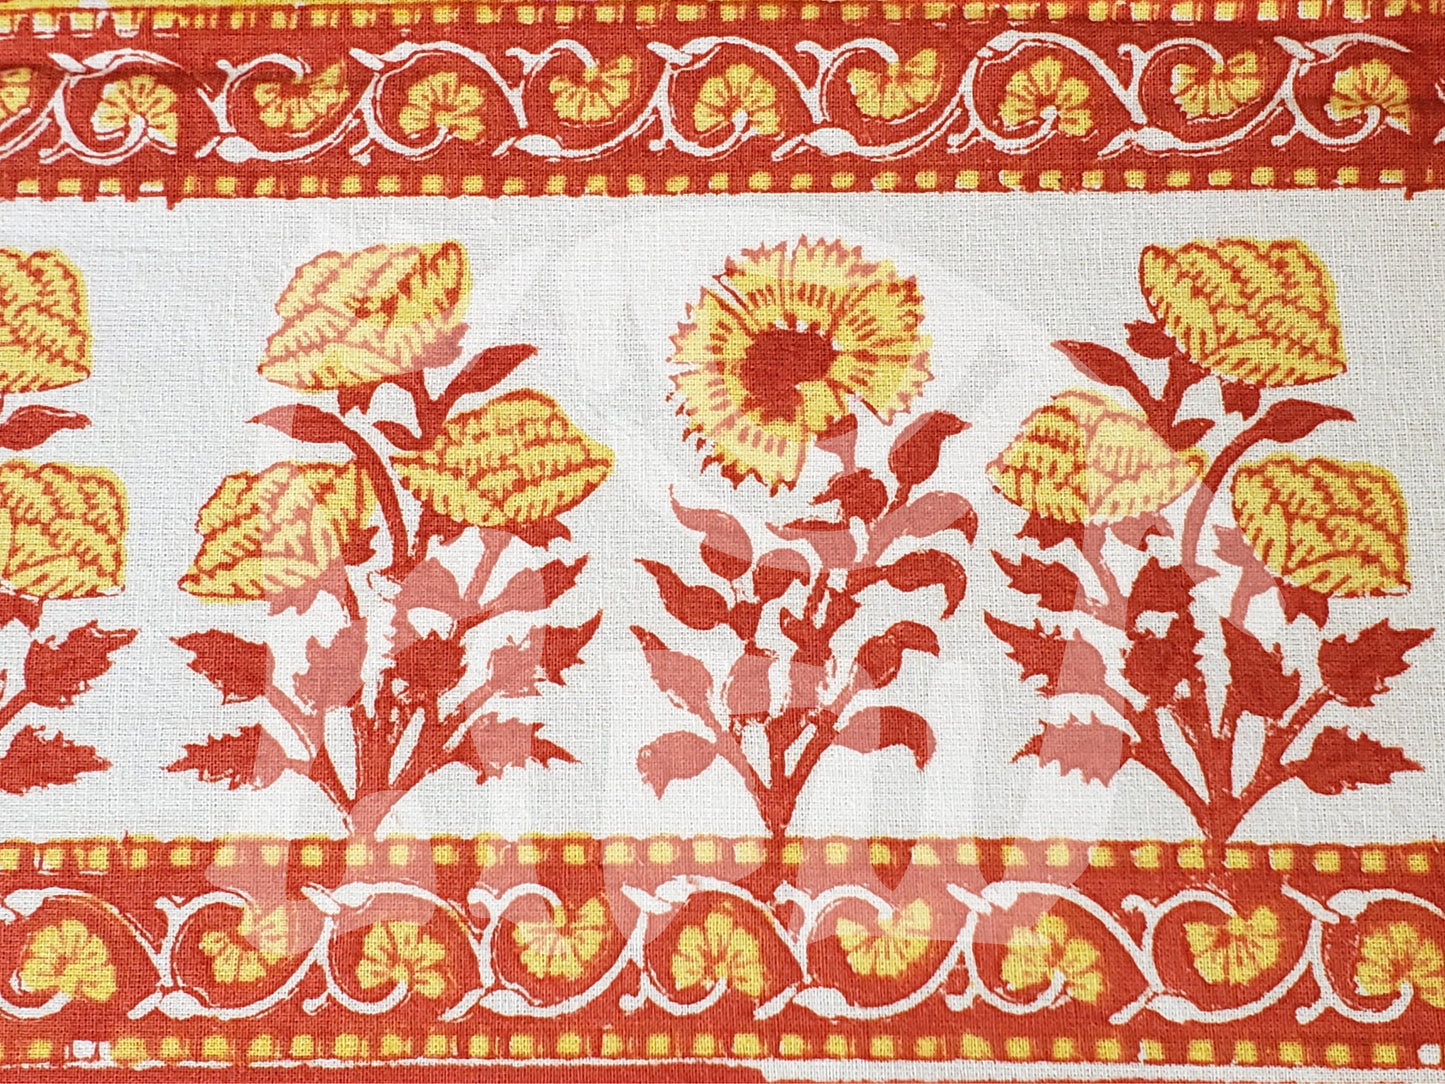 Detalle de borde de sobrecama 100% algodón estampado a mano, base color crudo con flores amarillas y tallos rojos. Hecho en la India.